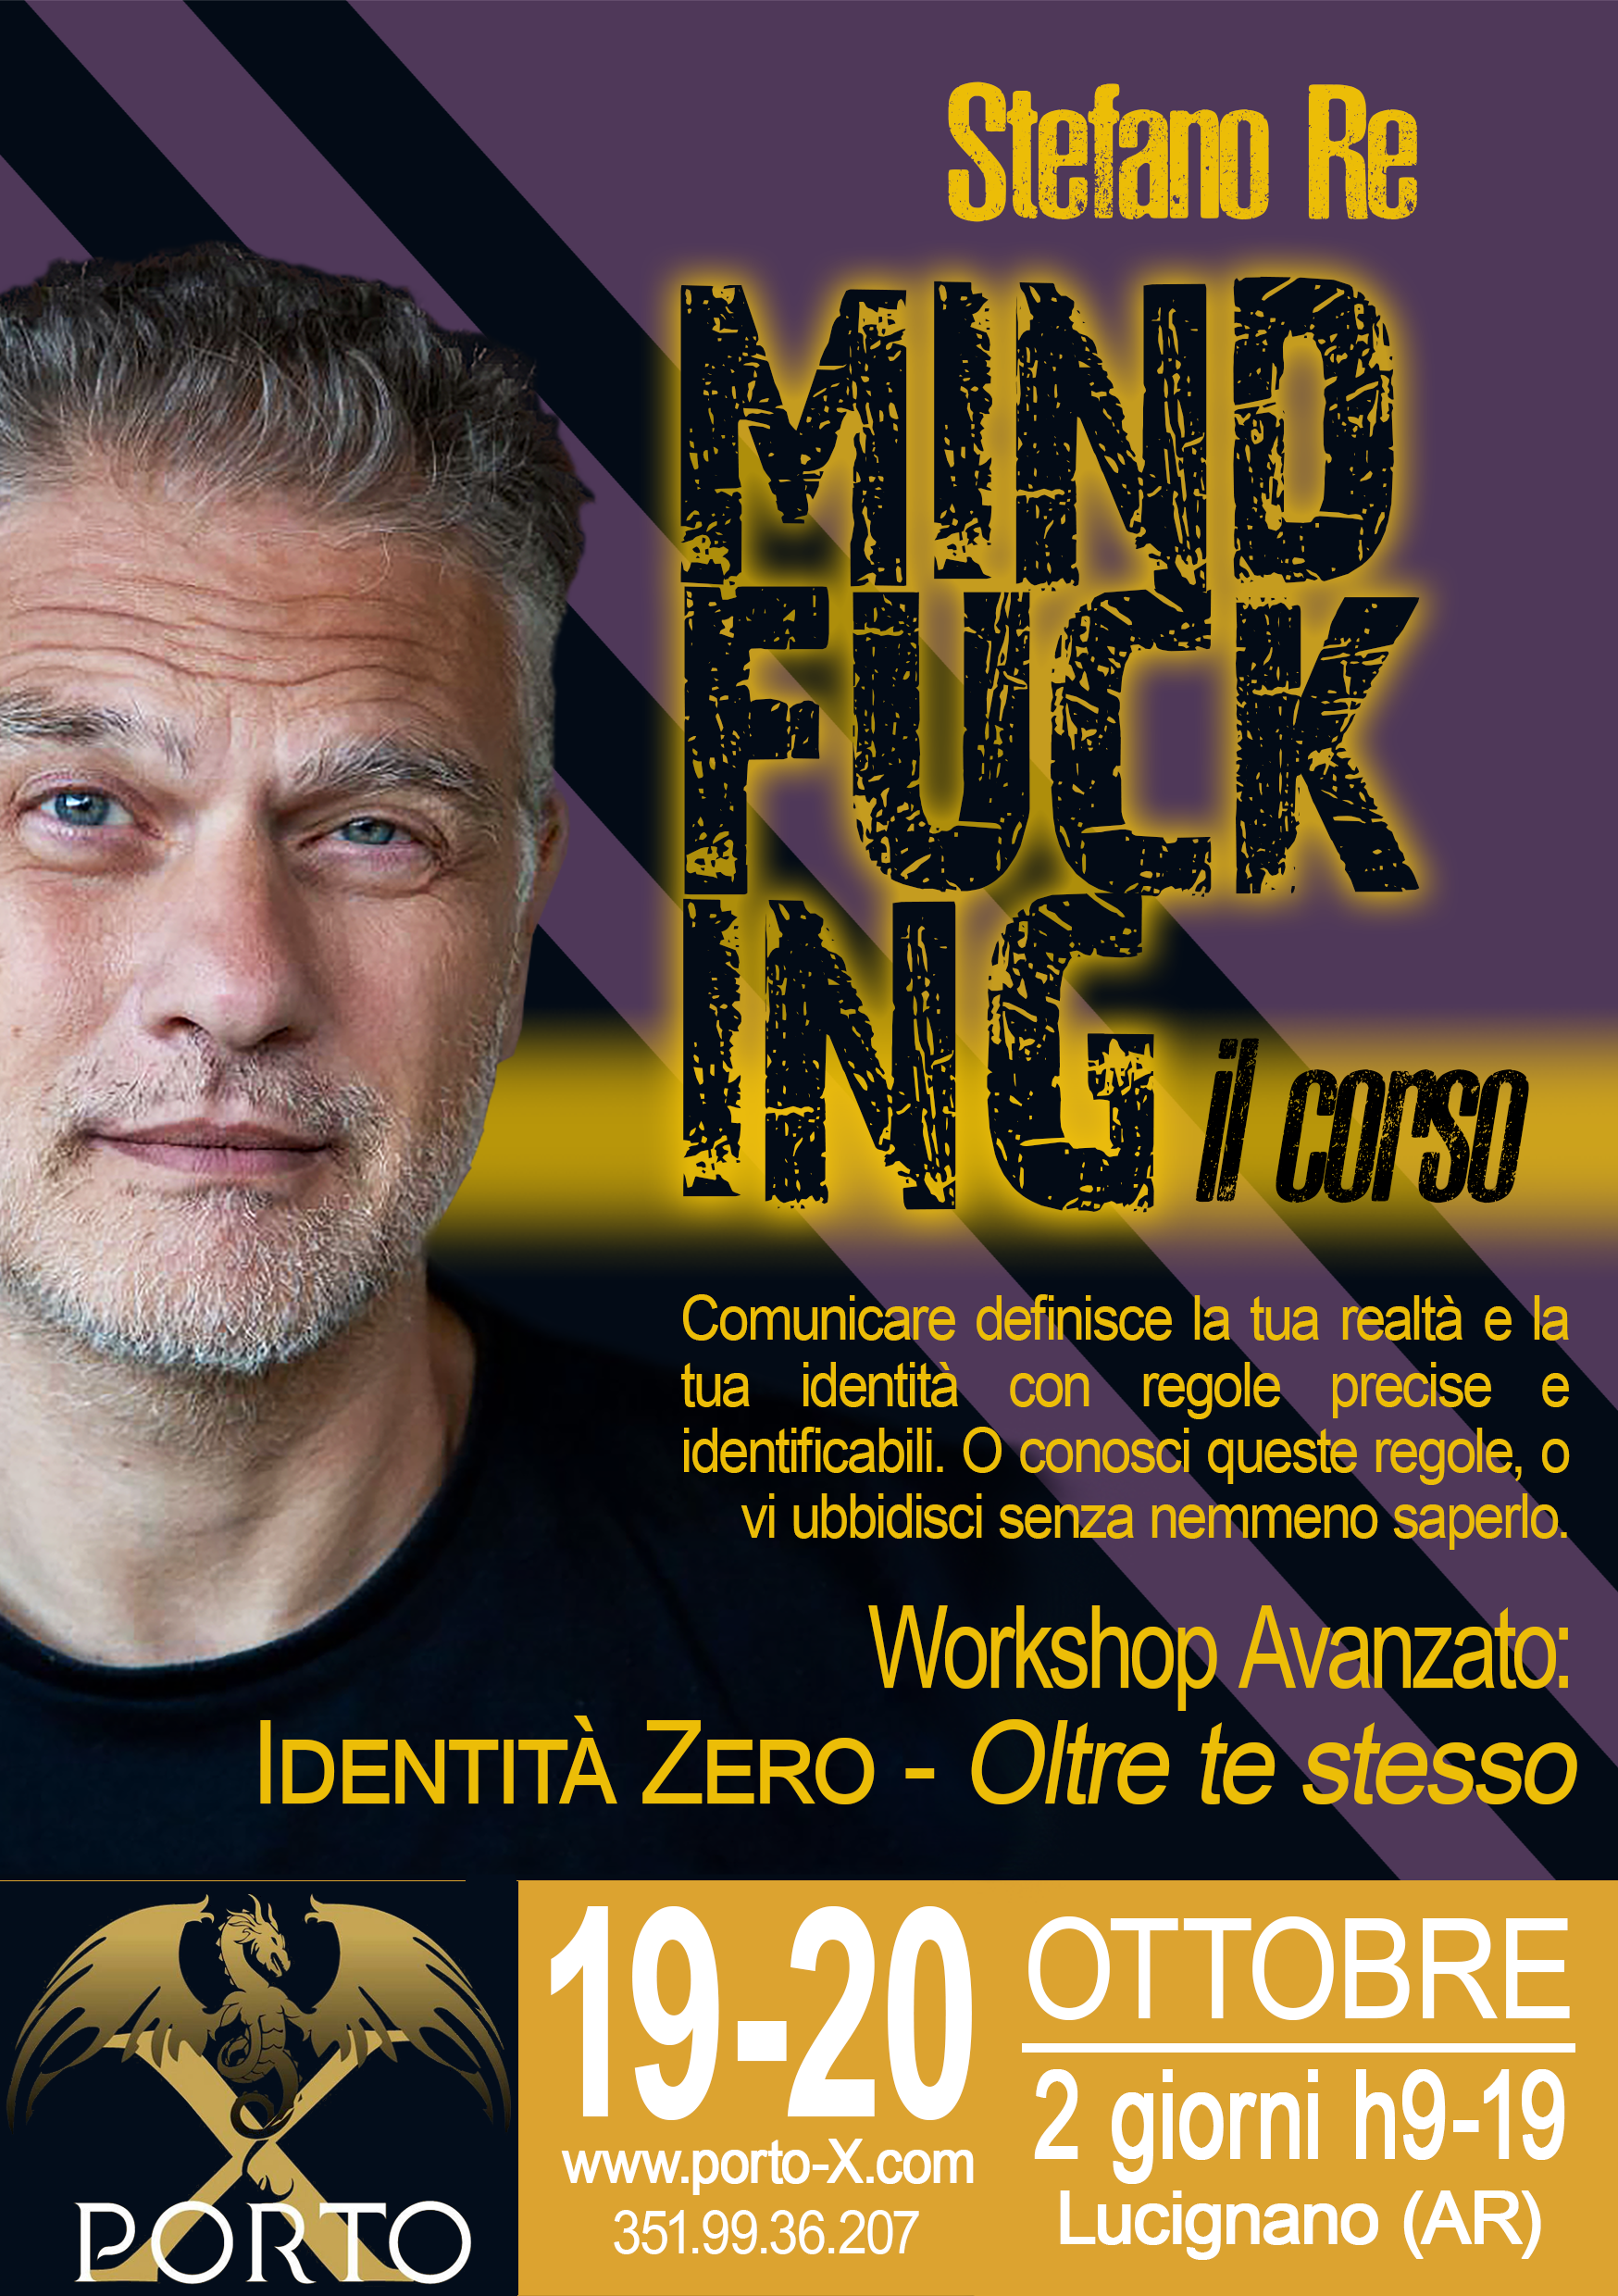 Stefano Re Mindfucking Corso Avanzato